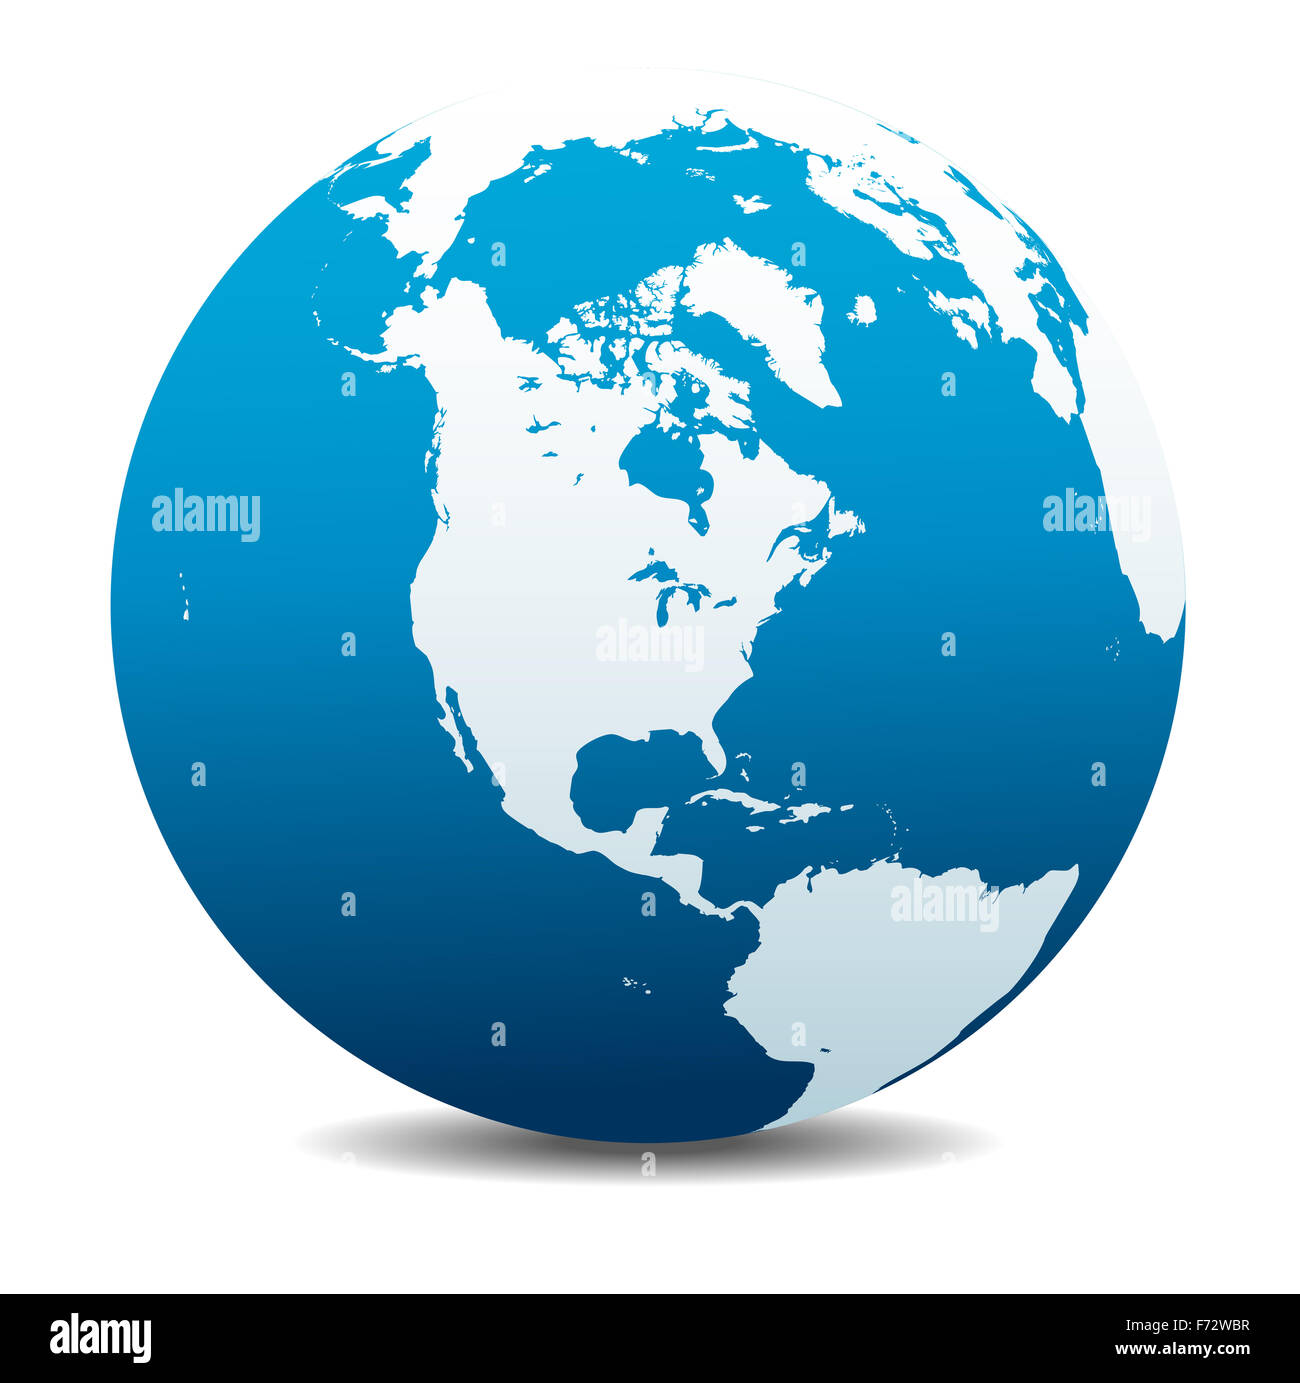 Amérique du Nord, Amérique du Sud et Amérique Centrale, monde global Banque D'Images